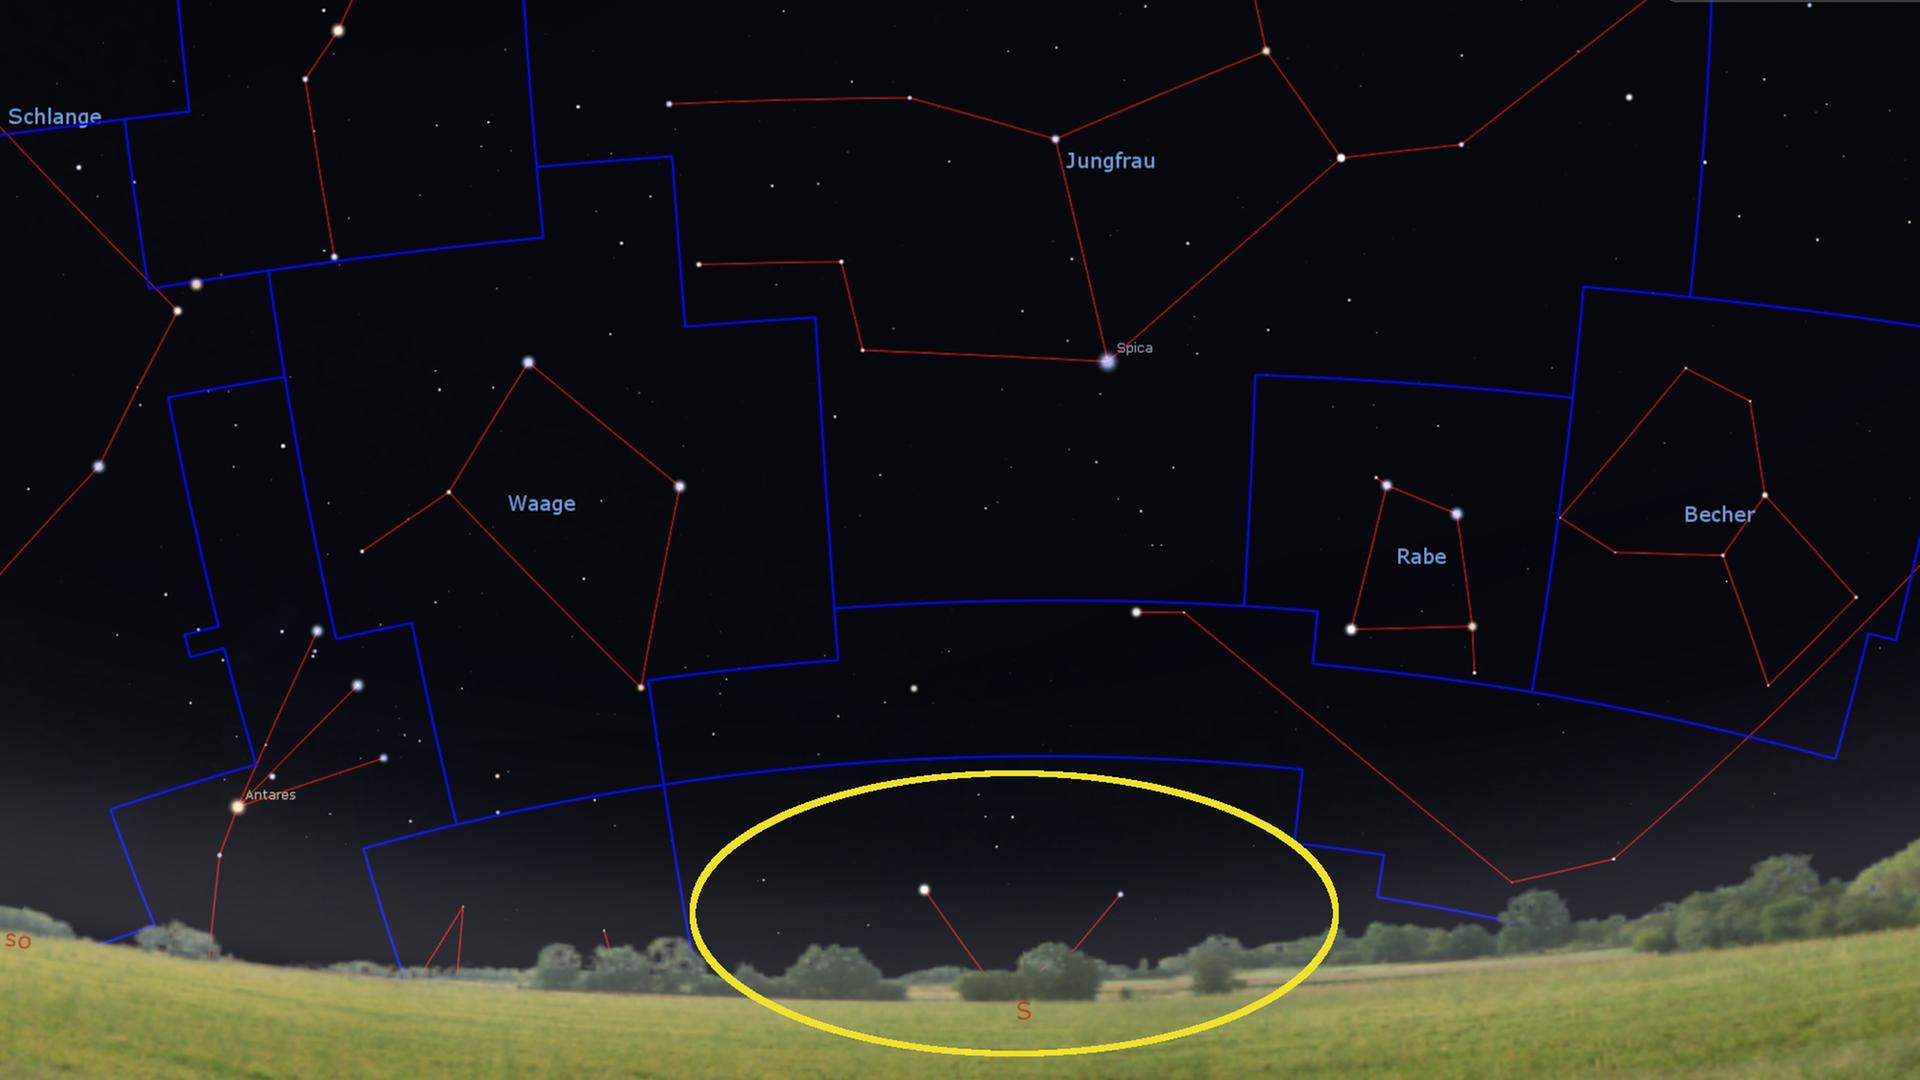 Gegen 23 Uhr zeigen sich knapp über dem Südhorizont (unterhalb von Waage, Jungfrau und Becher) die nördlichsten Sterne des Zentaur.